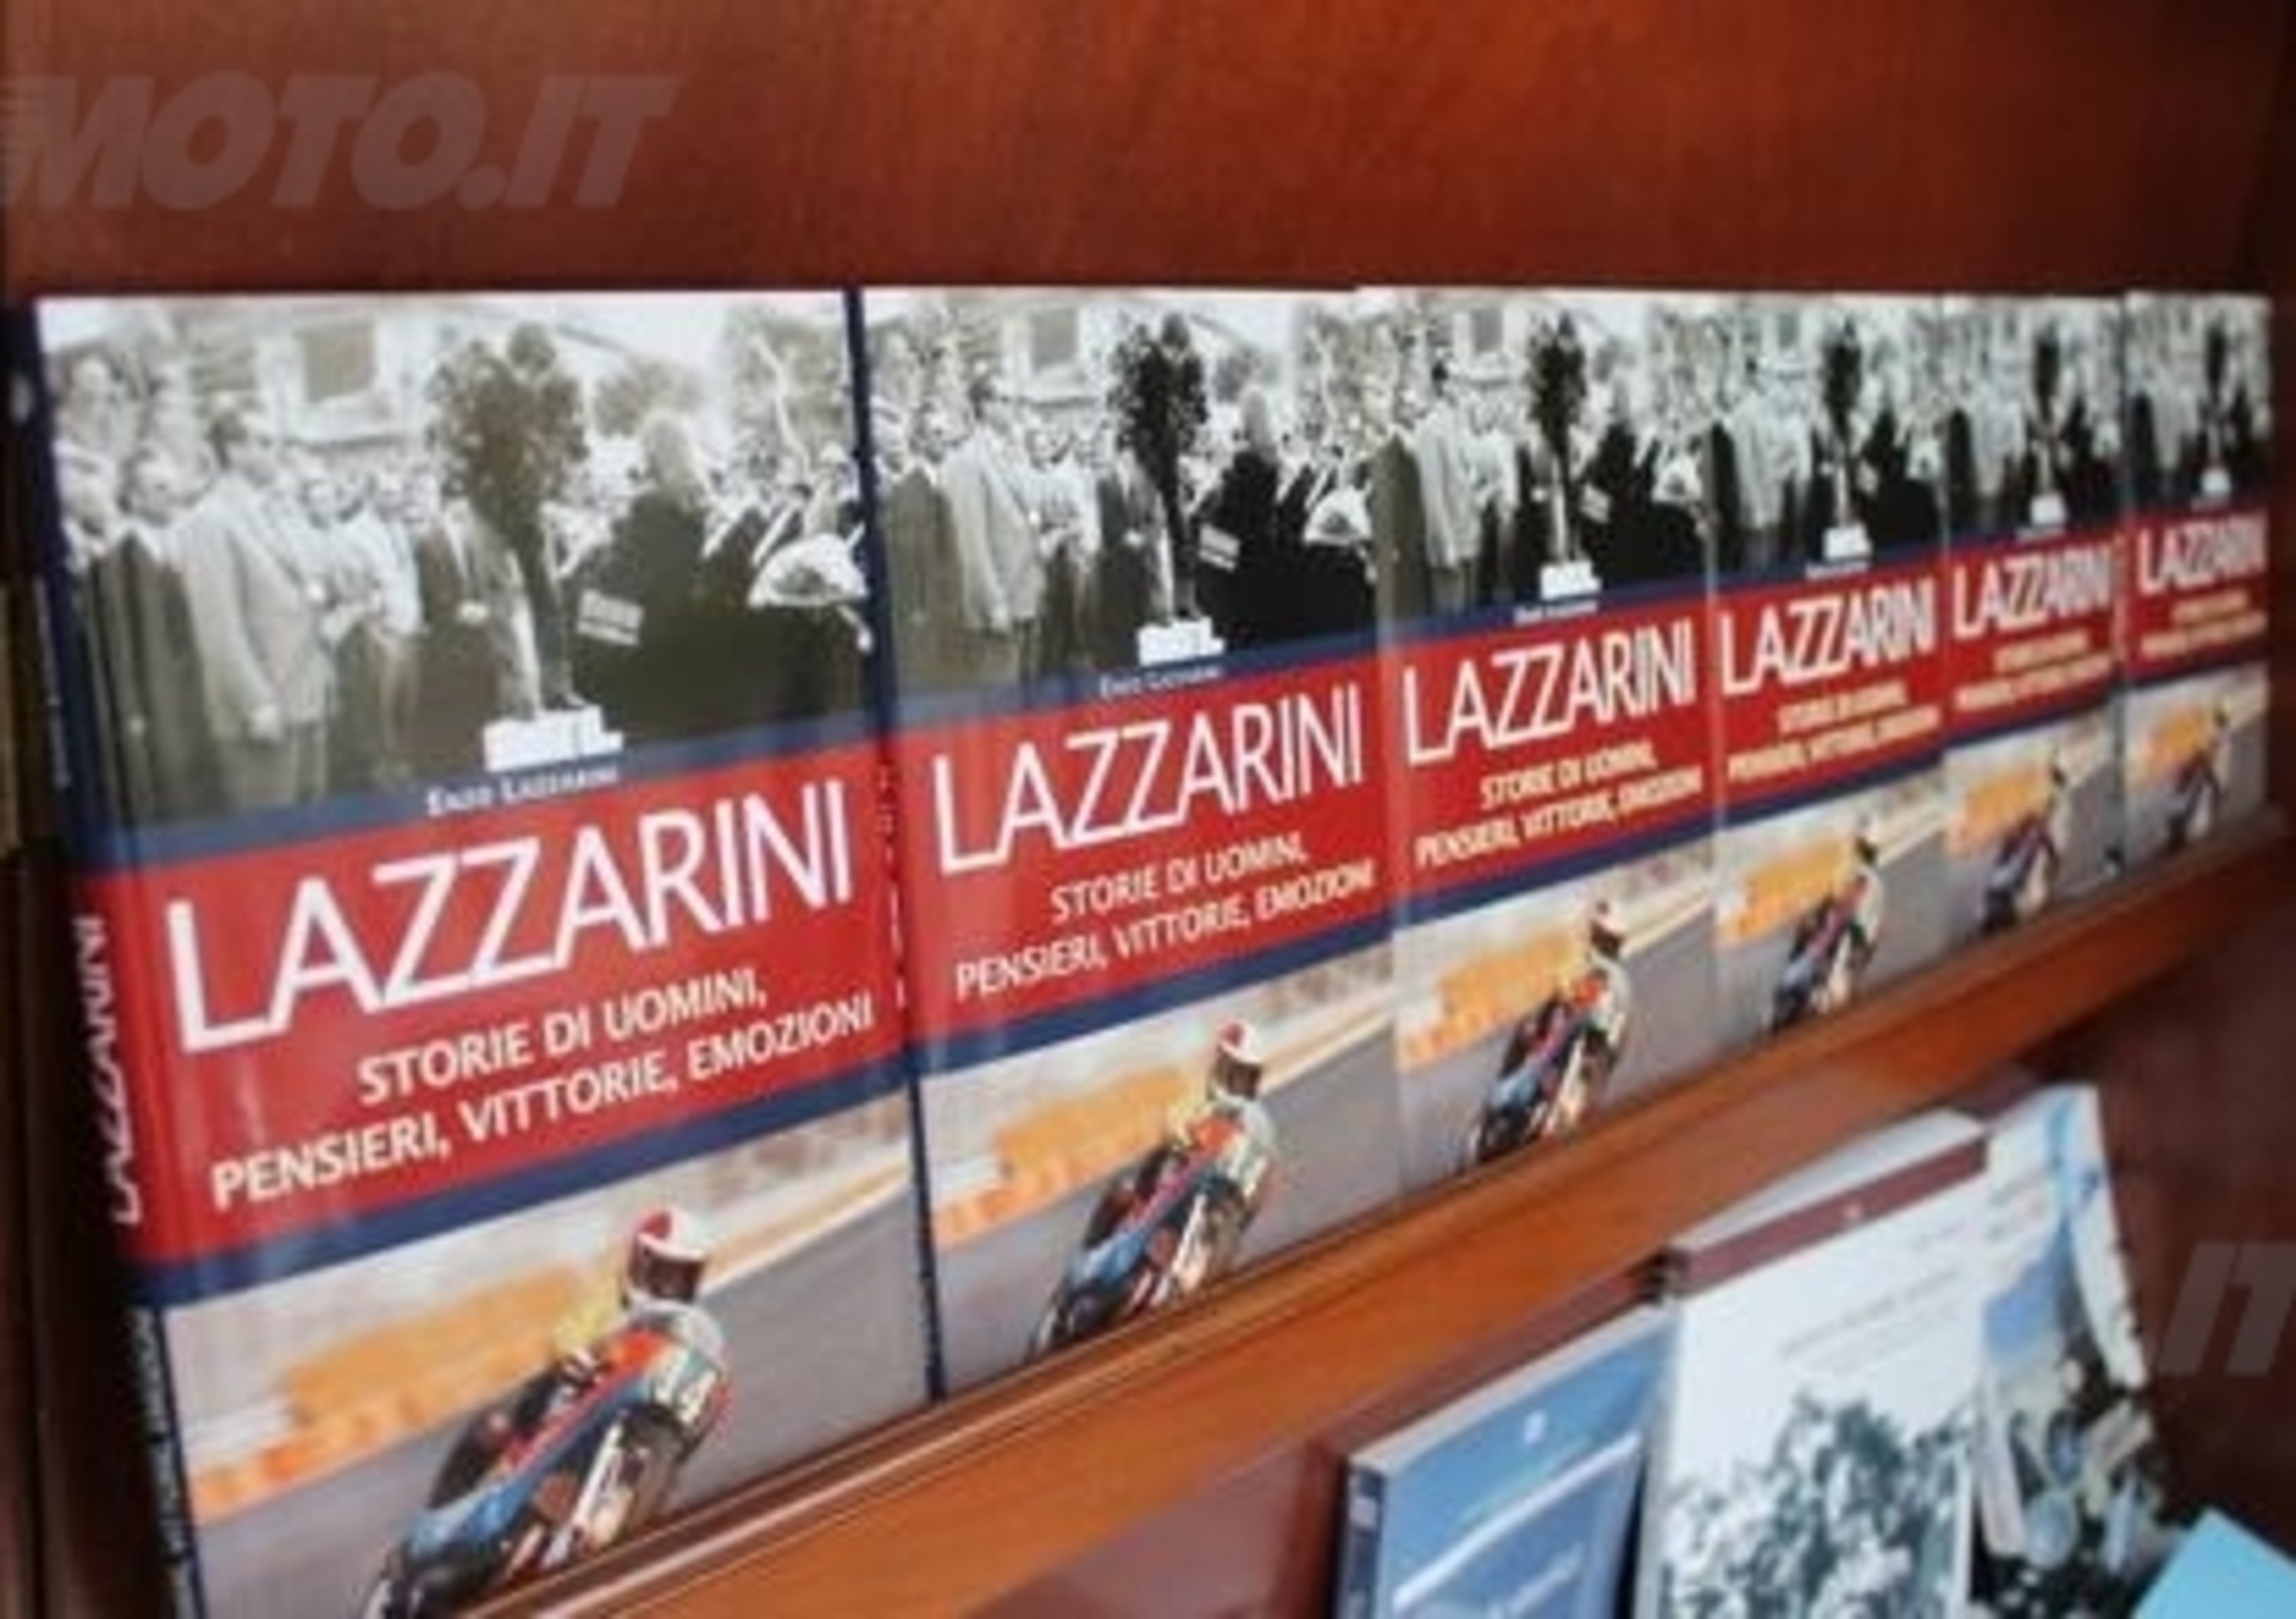 Enzo Lazzarini ha presentato il libro: &ldquo;Storie di Uomini, Pensieri, Vittorie, Emozioni&rdquo;